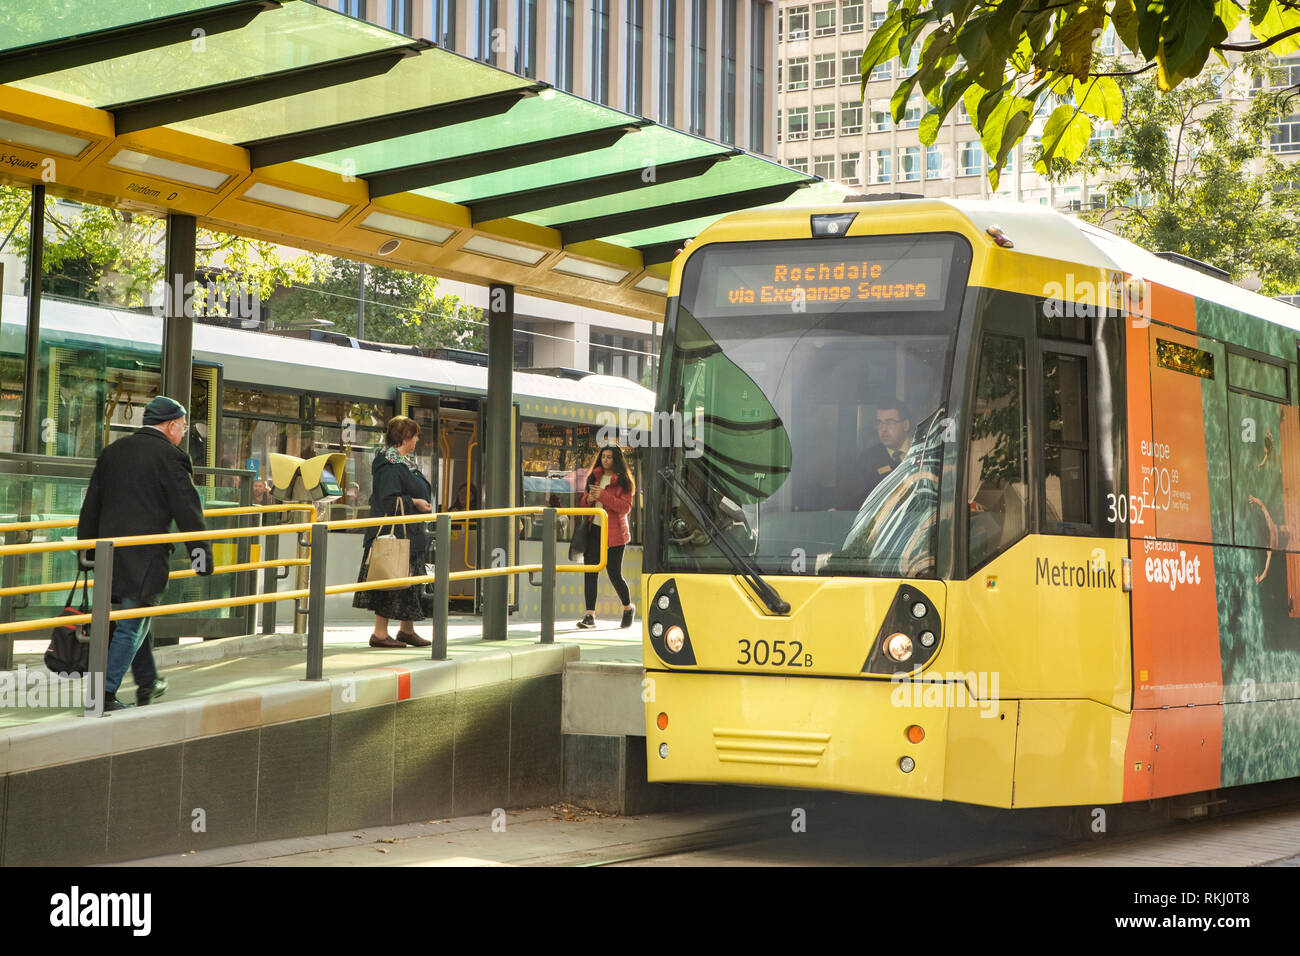 2 novembre 2018 : Manchester, UK - jaune Metrolink tram sur la Place Saint-Pierre, à l'arrêt de tramway. Banque D'Images